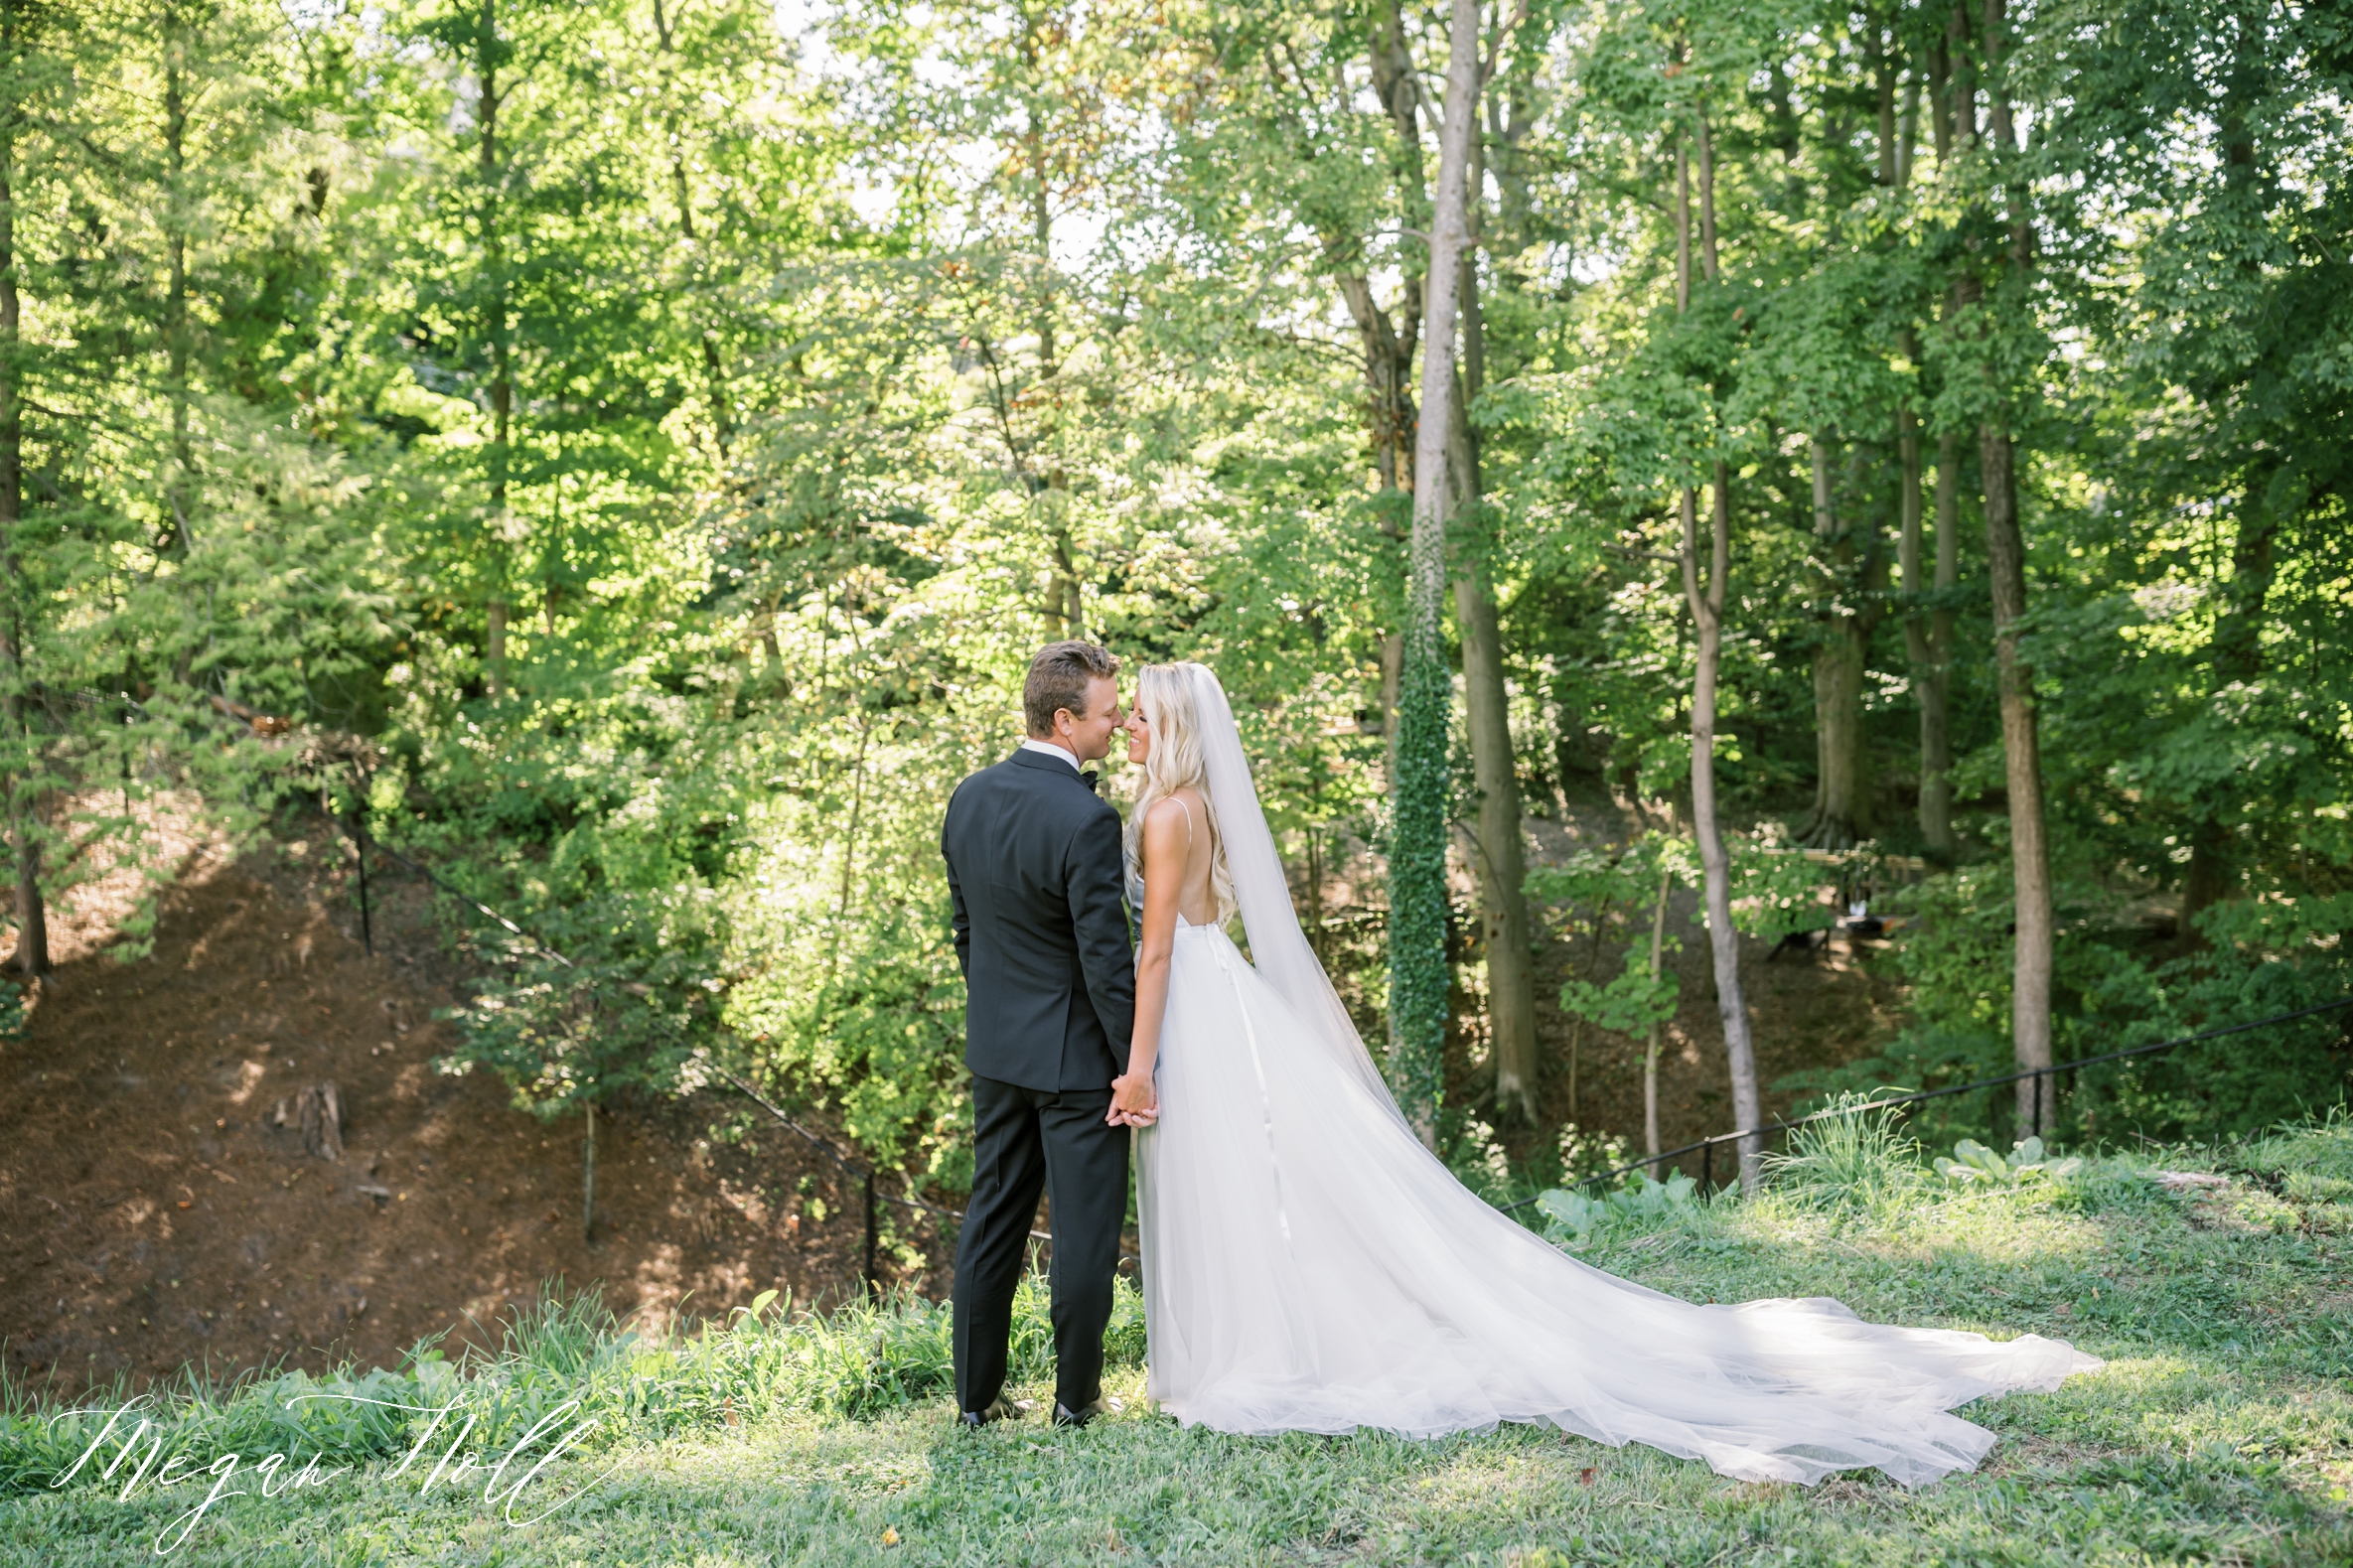 Lexington Kentucky Wedding Photographer takes photos of Bride and Groom